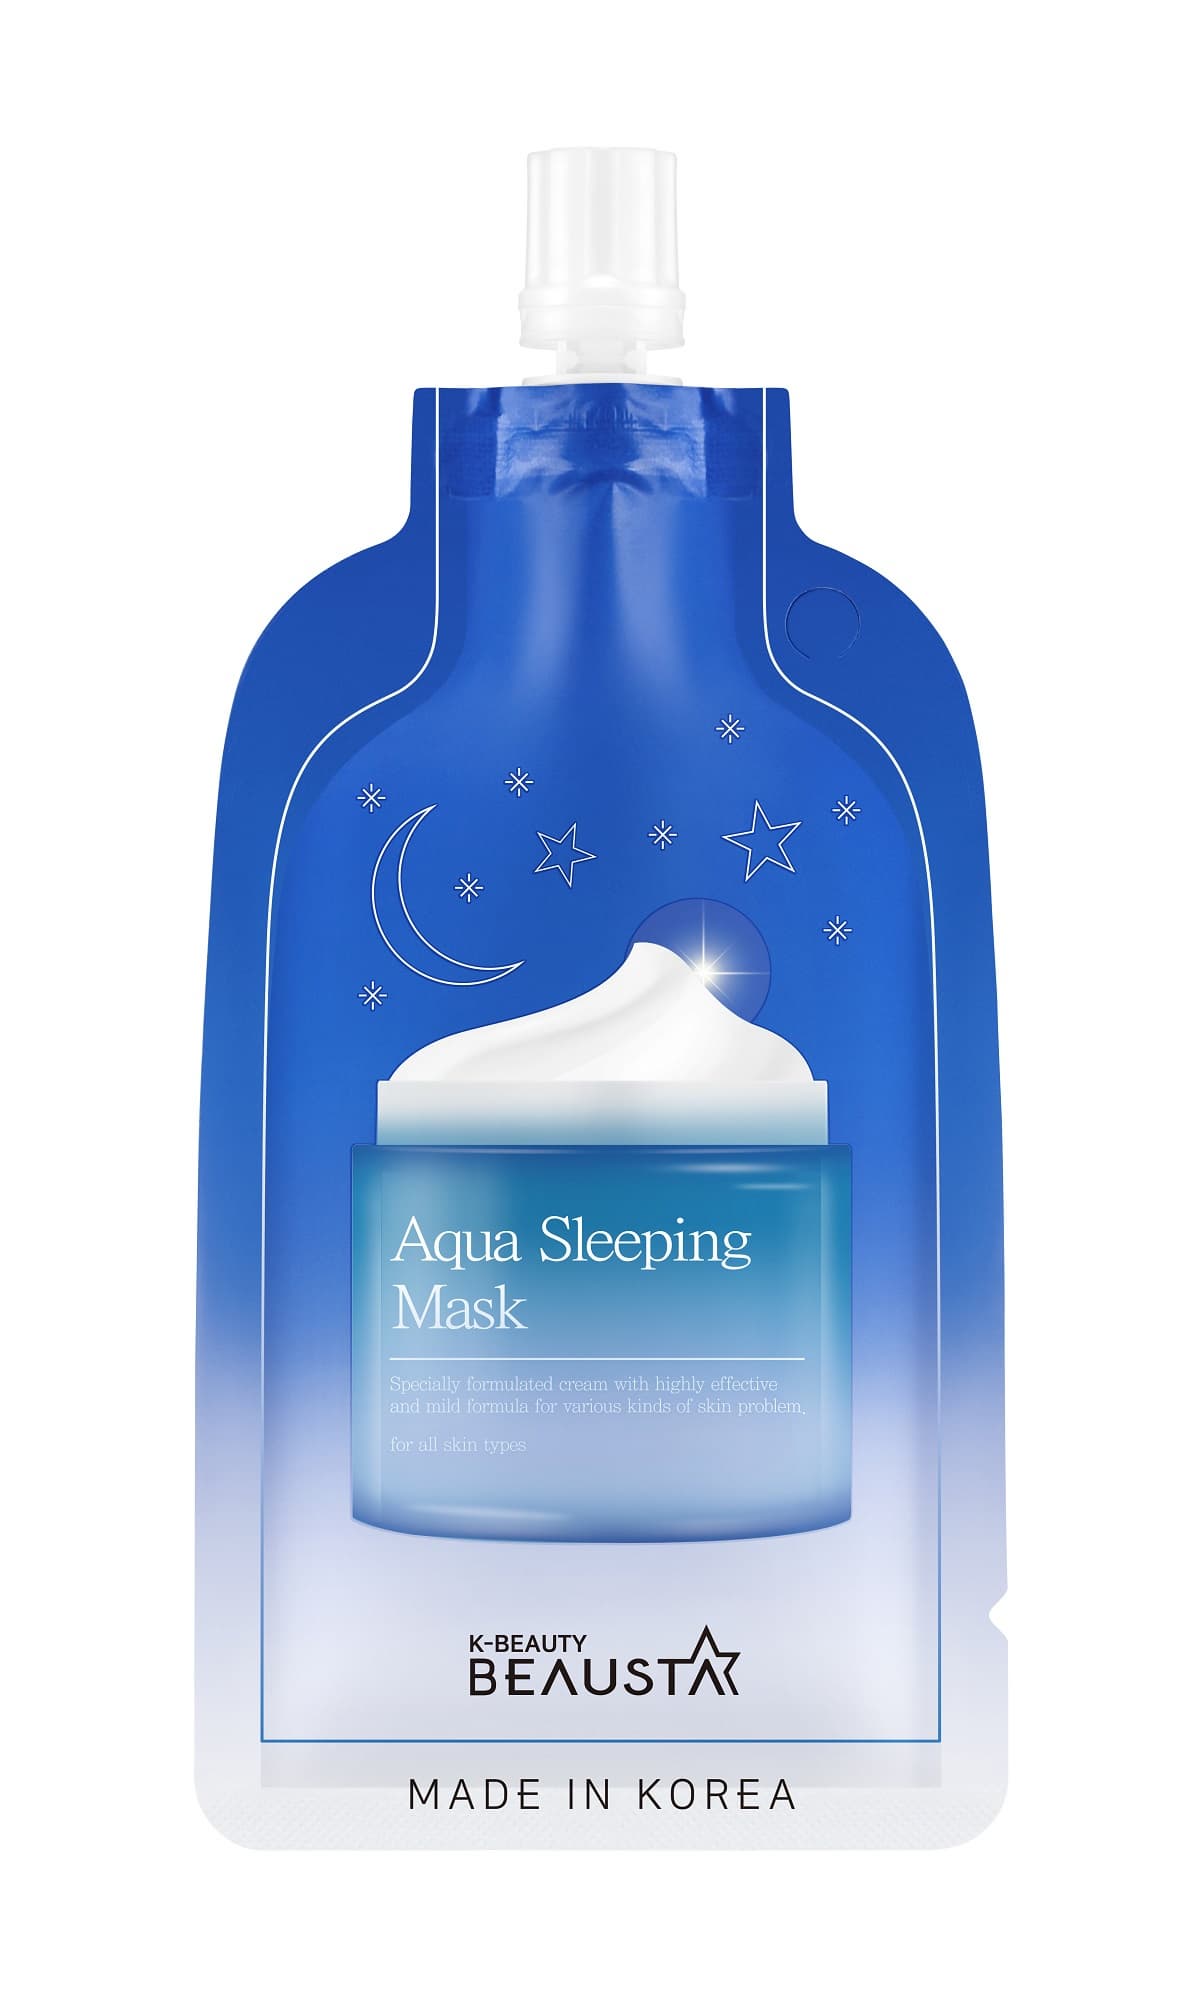 BEAUSTA Aqua Sleeping Mask